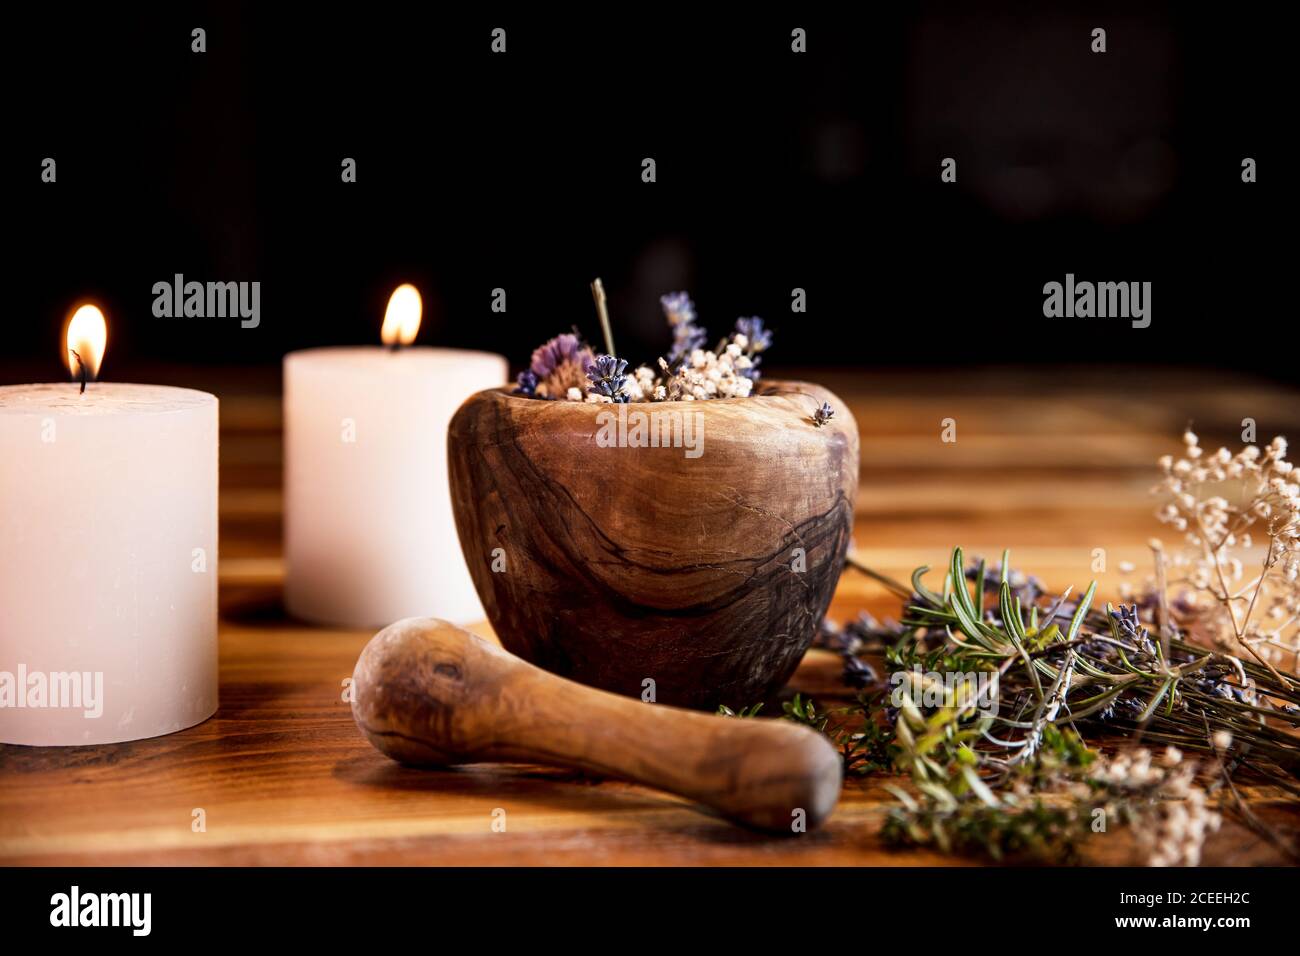 Mörser mit getrockneten Heilkräutern, Blumen und Kerzen, rituelle Reinigung und Reinigung, Copyspace Stockfoto